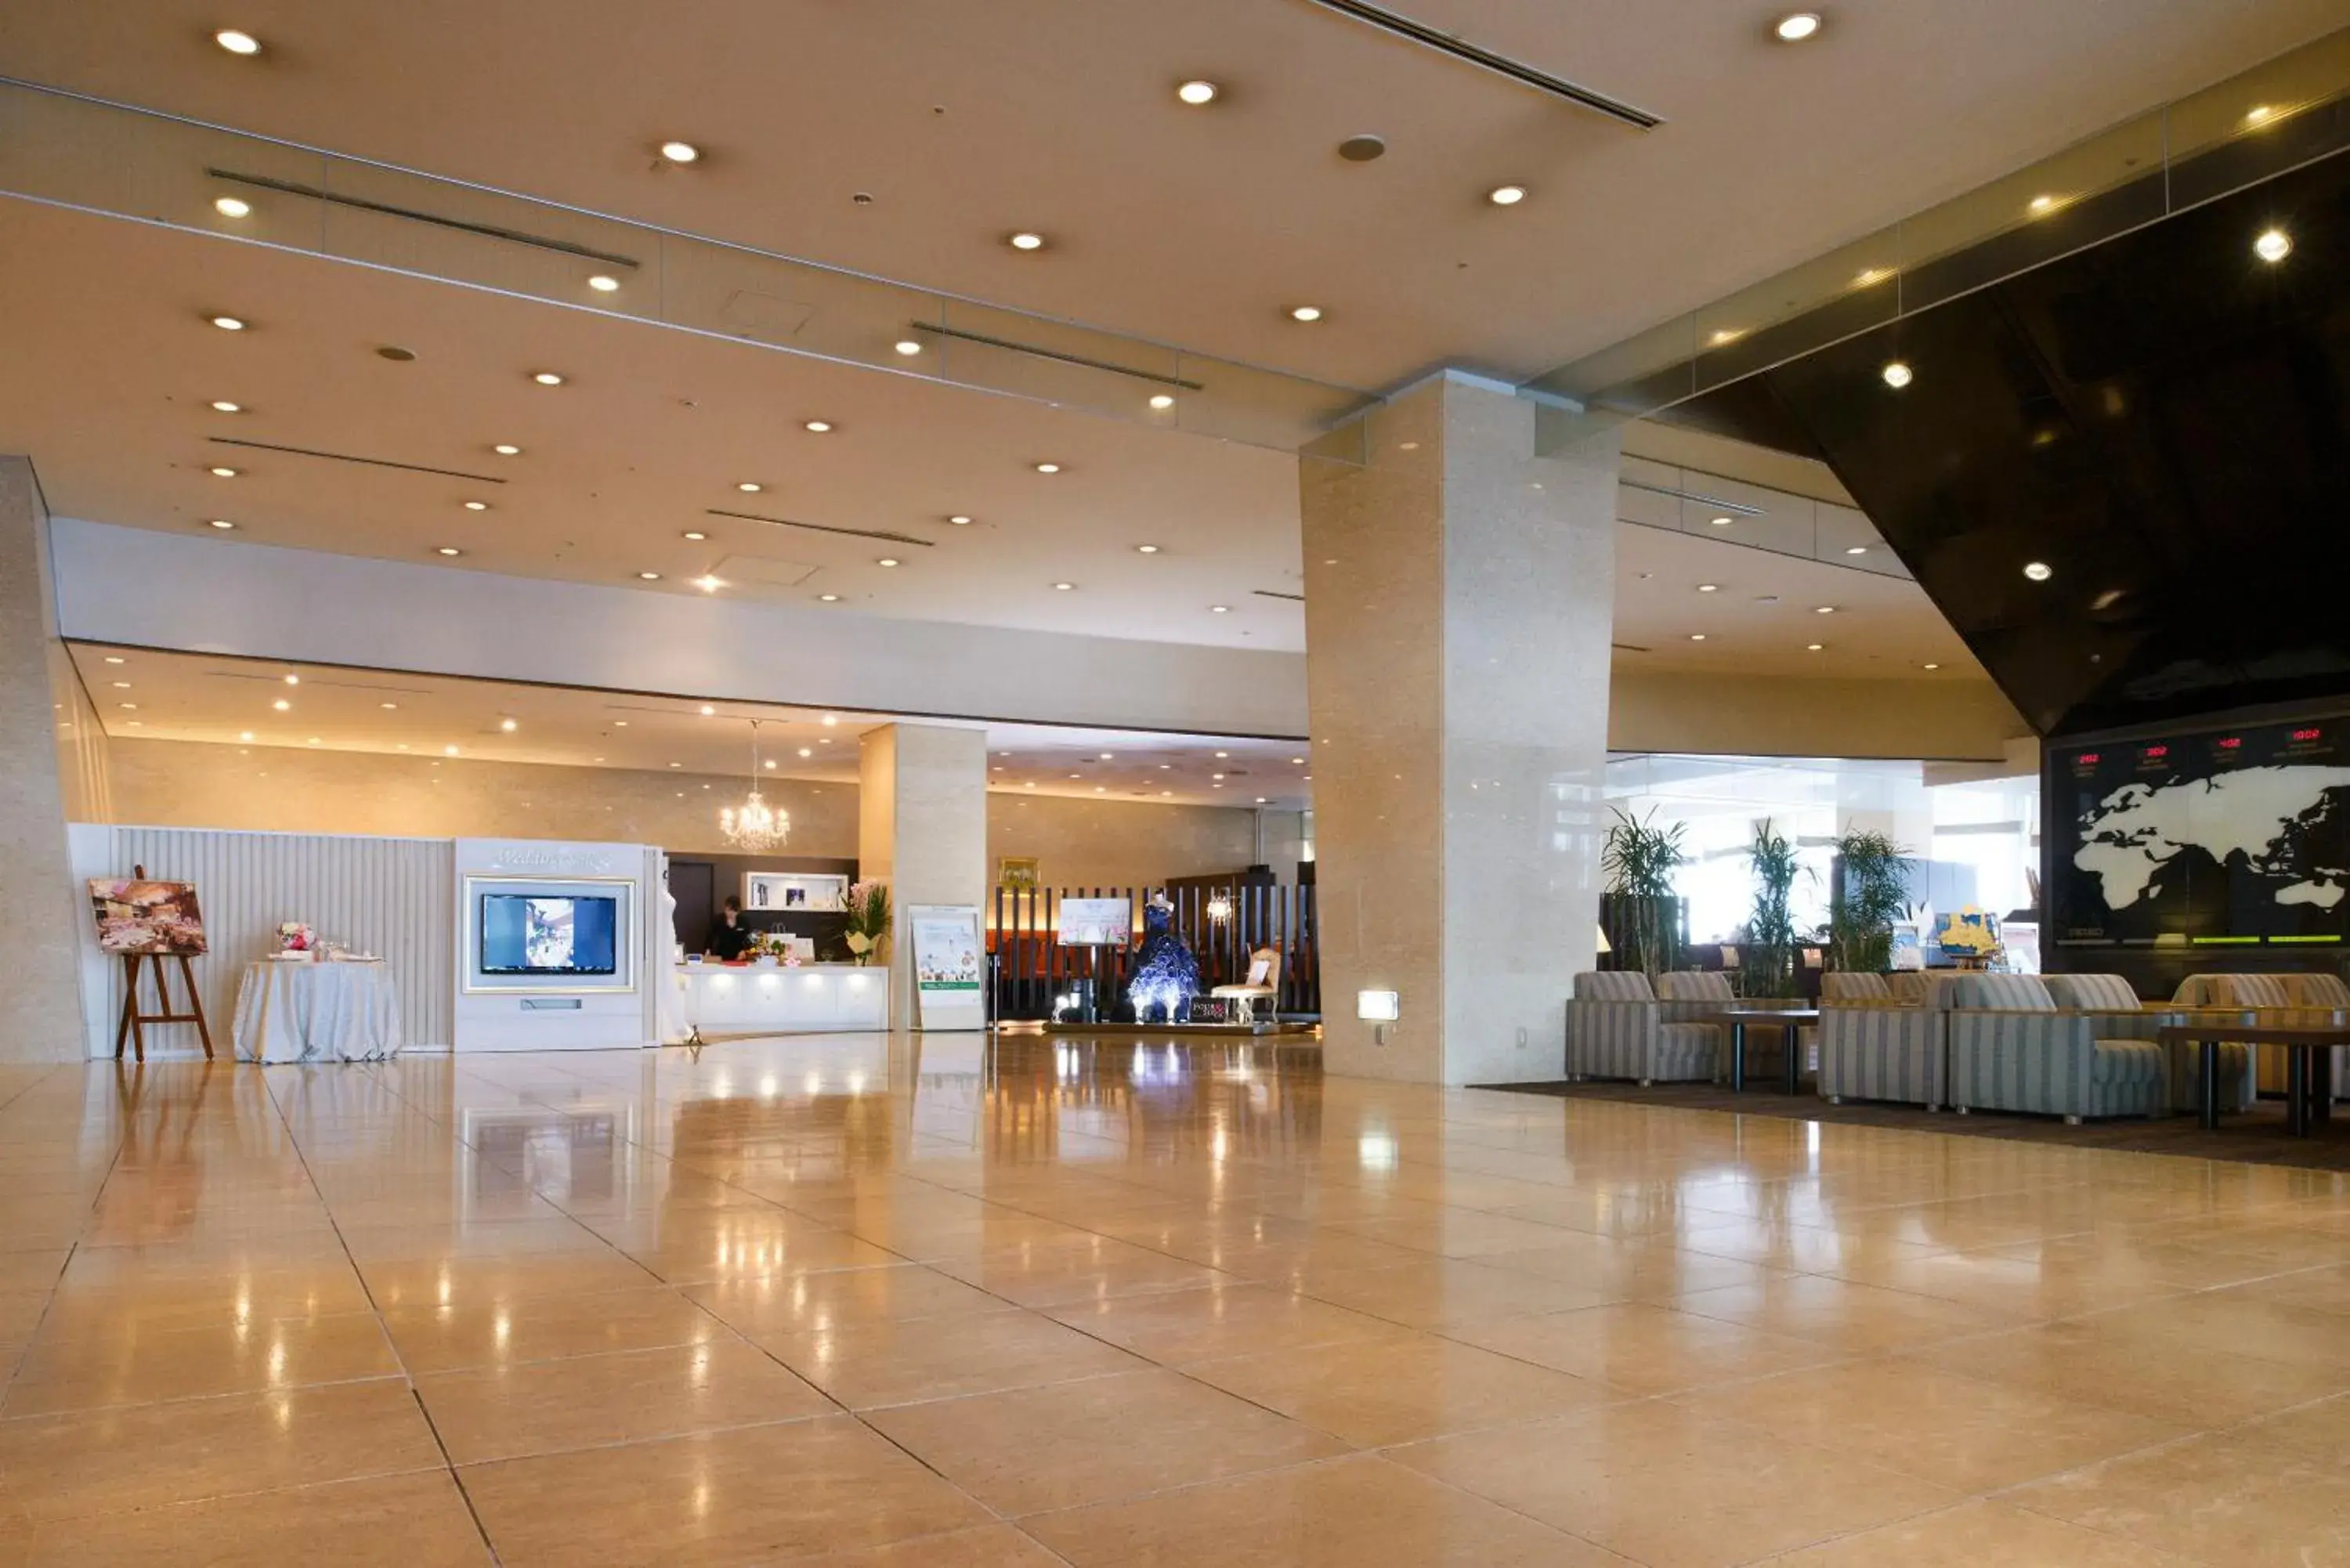 Lobby or reception, Lobby/Reception in Hotel Aomori